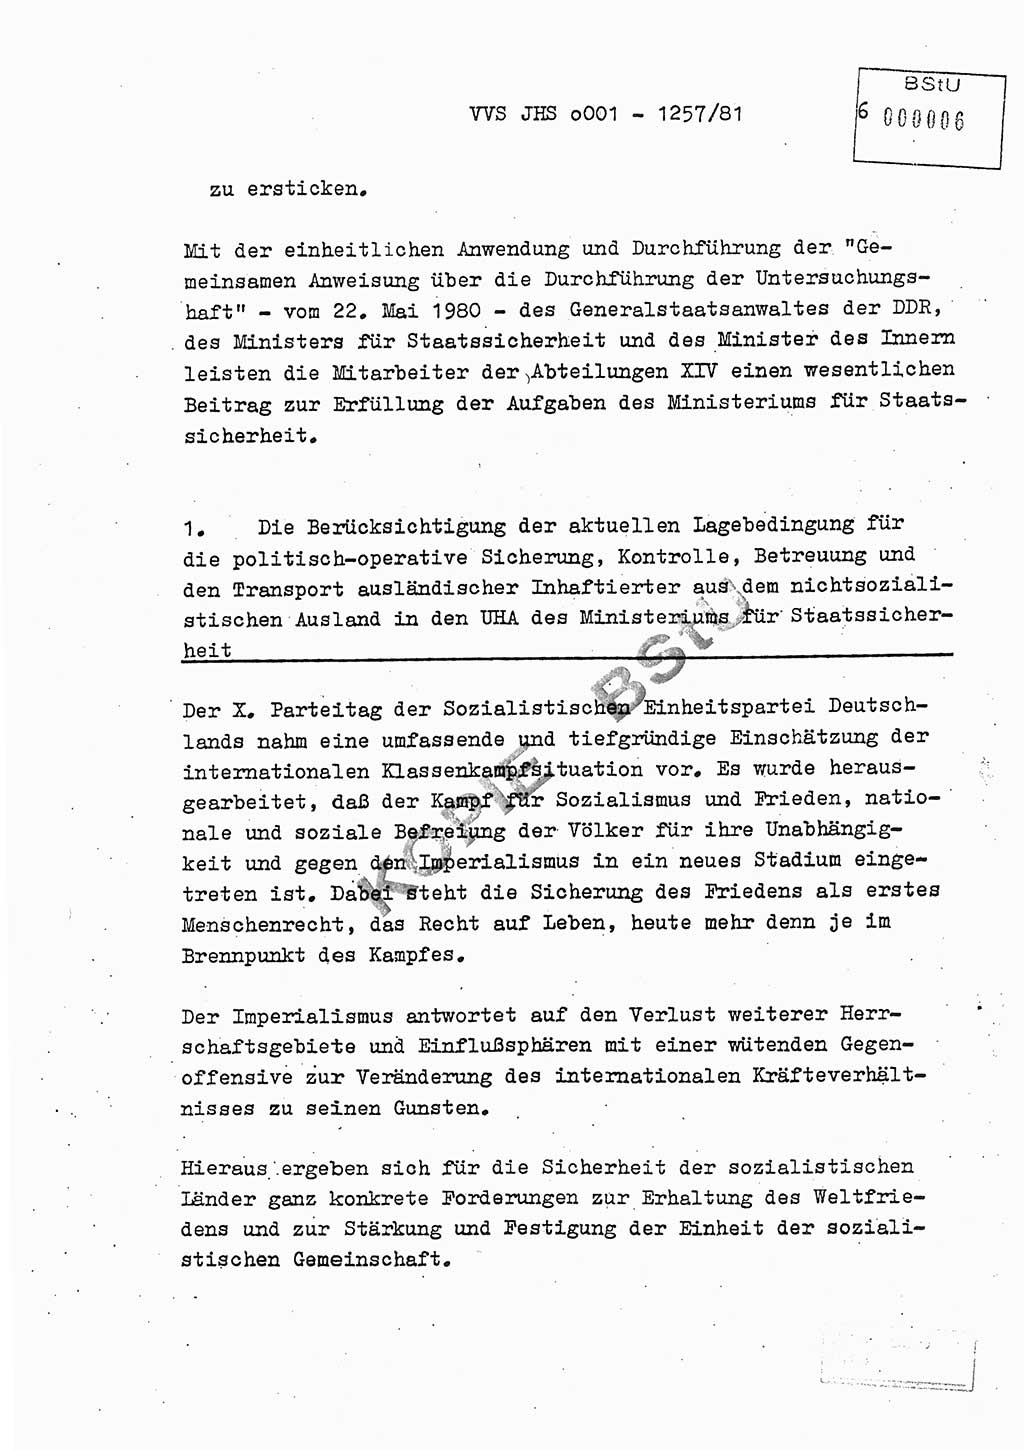 Fachschulabschlußarbeit Unterleutnant Dieter Möller (BV Rst. Abt. ⅩⅣ), Ministerium für Staatssicherheit (MfS) [Deutsche Demokratische Republik (DDR)], Juristische Hochschule (JHS), Vertrauliche Verschlußsache (VVS) o001-1257/81, Potsdam 1982, Seite 6 (FS-Abschl.-Arb. MfS DDR JHS VVS o001-1257/81 1982, S. 6)